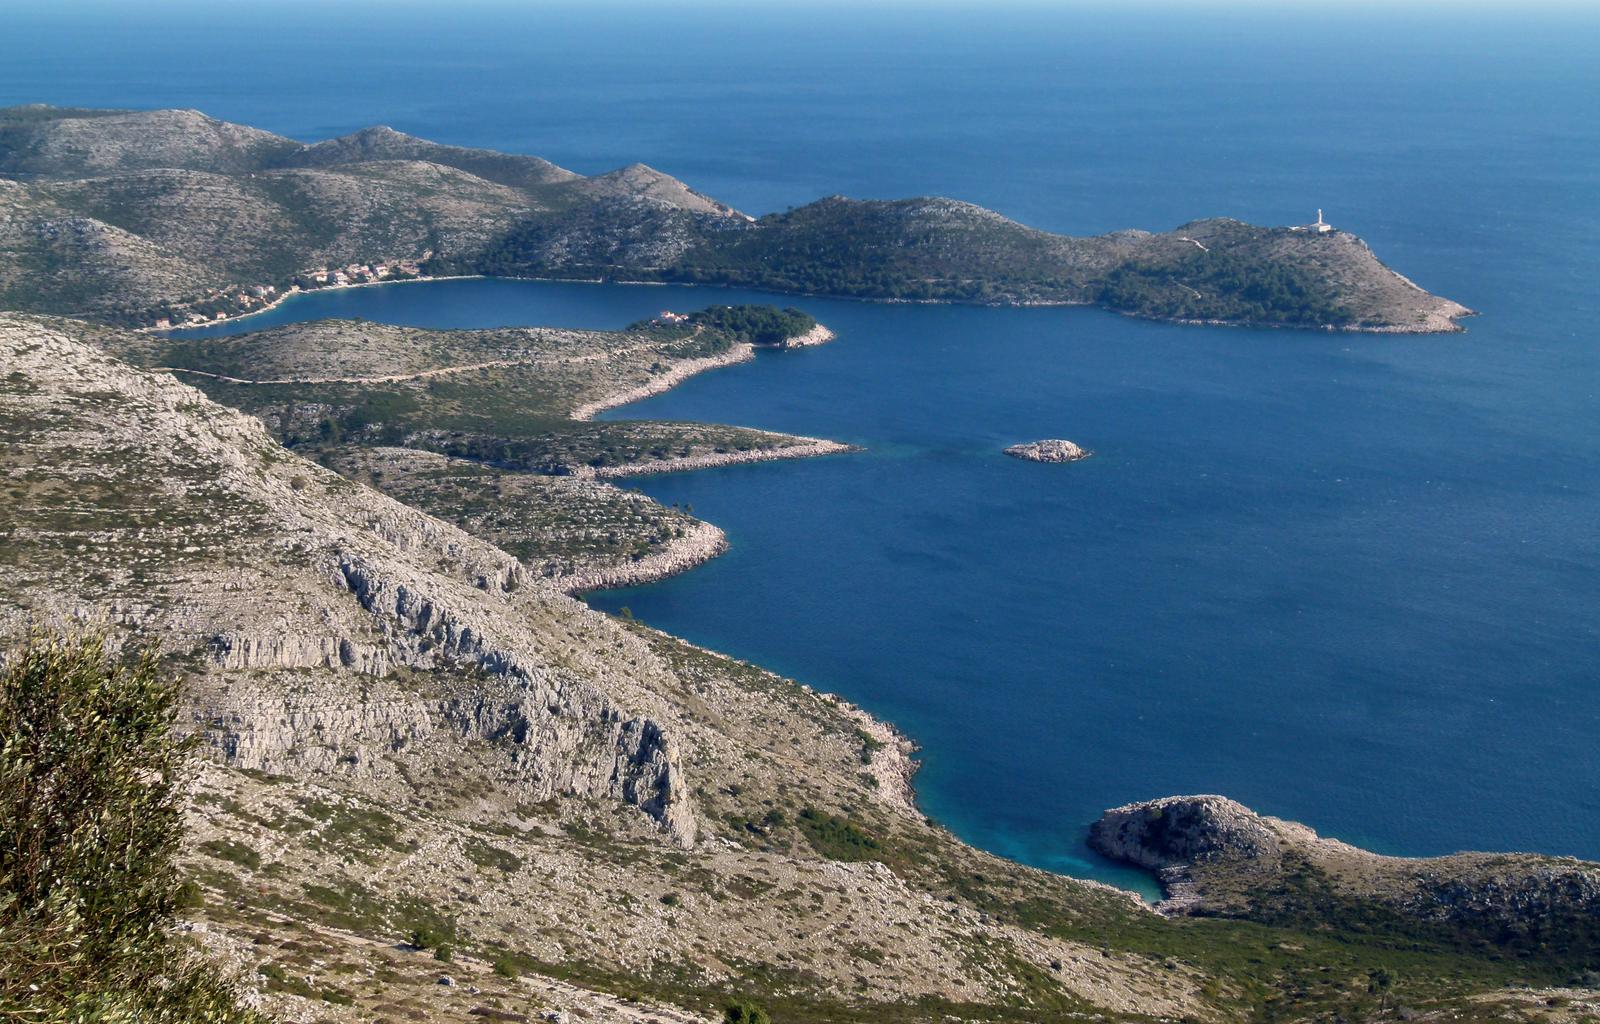 Najljepši hrvatski otoci, otok Lastovo